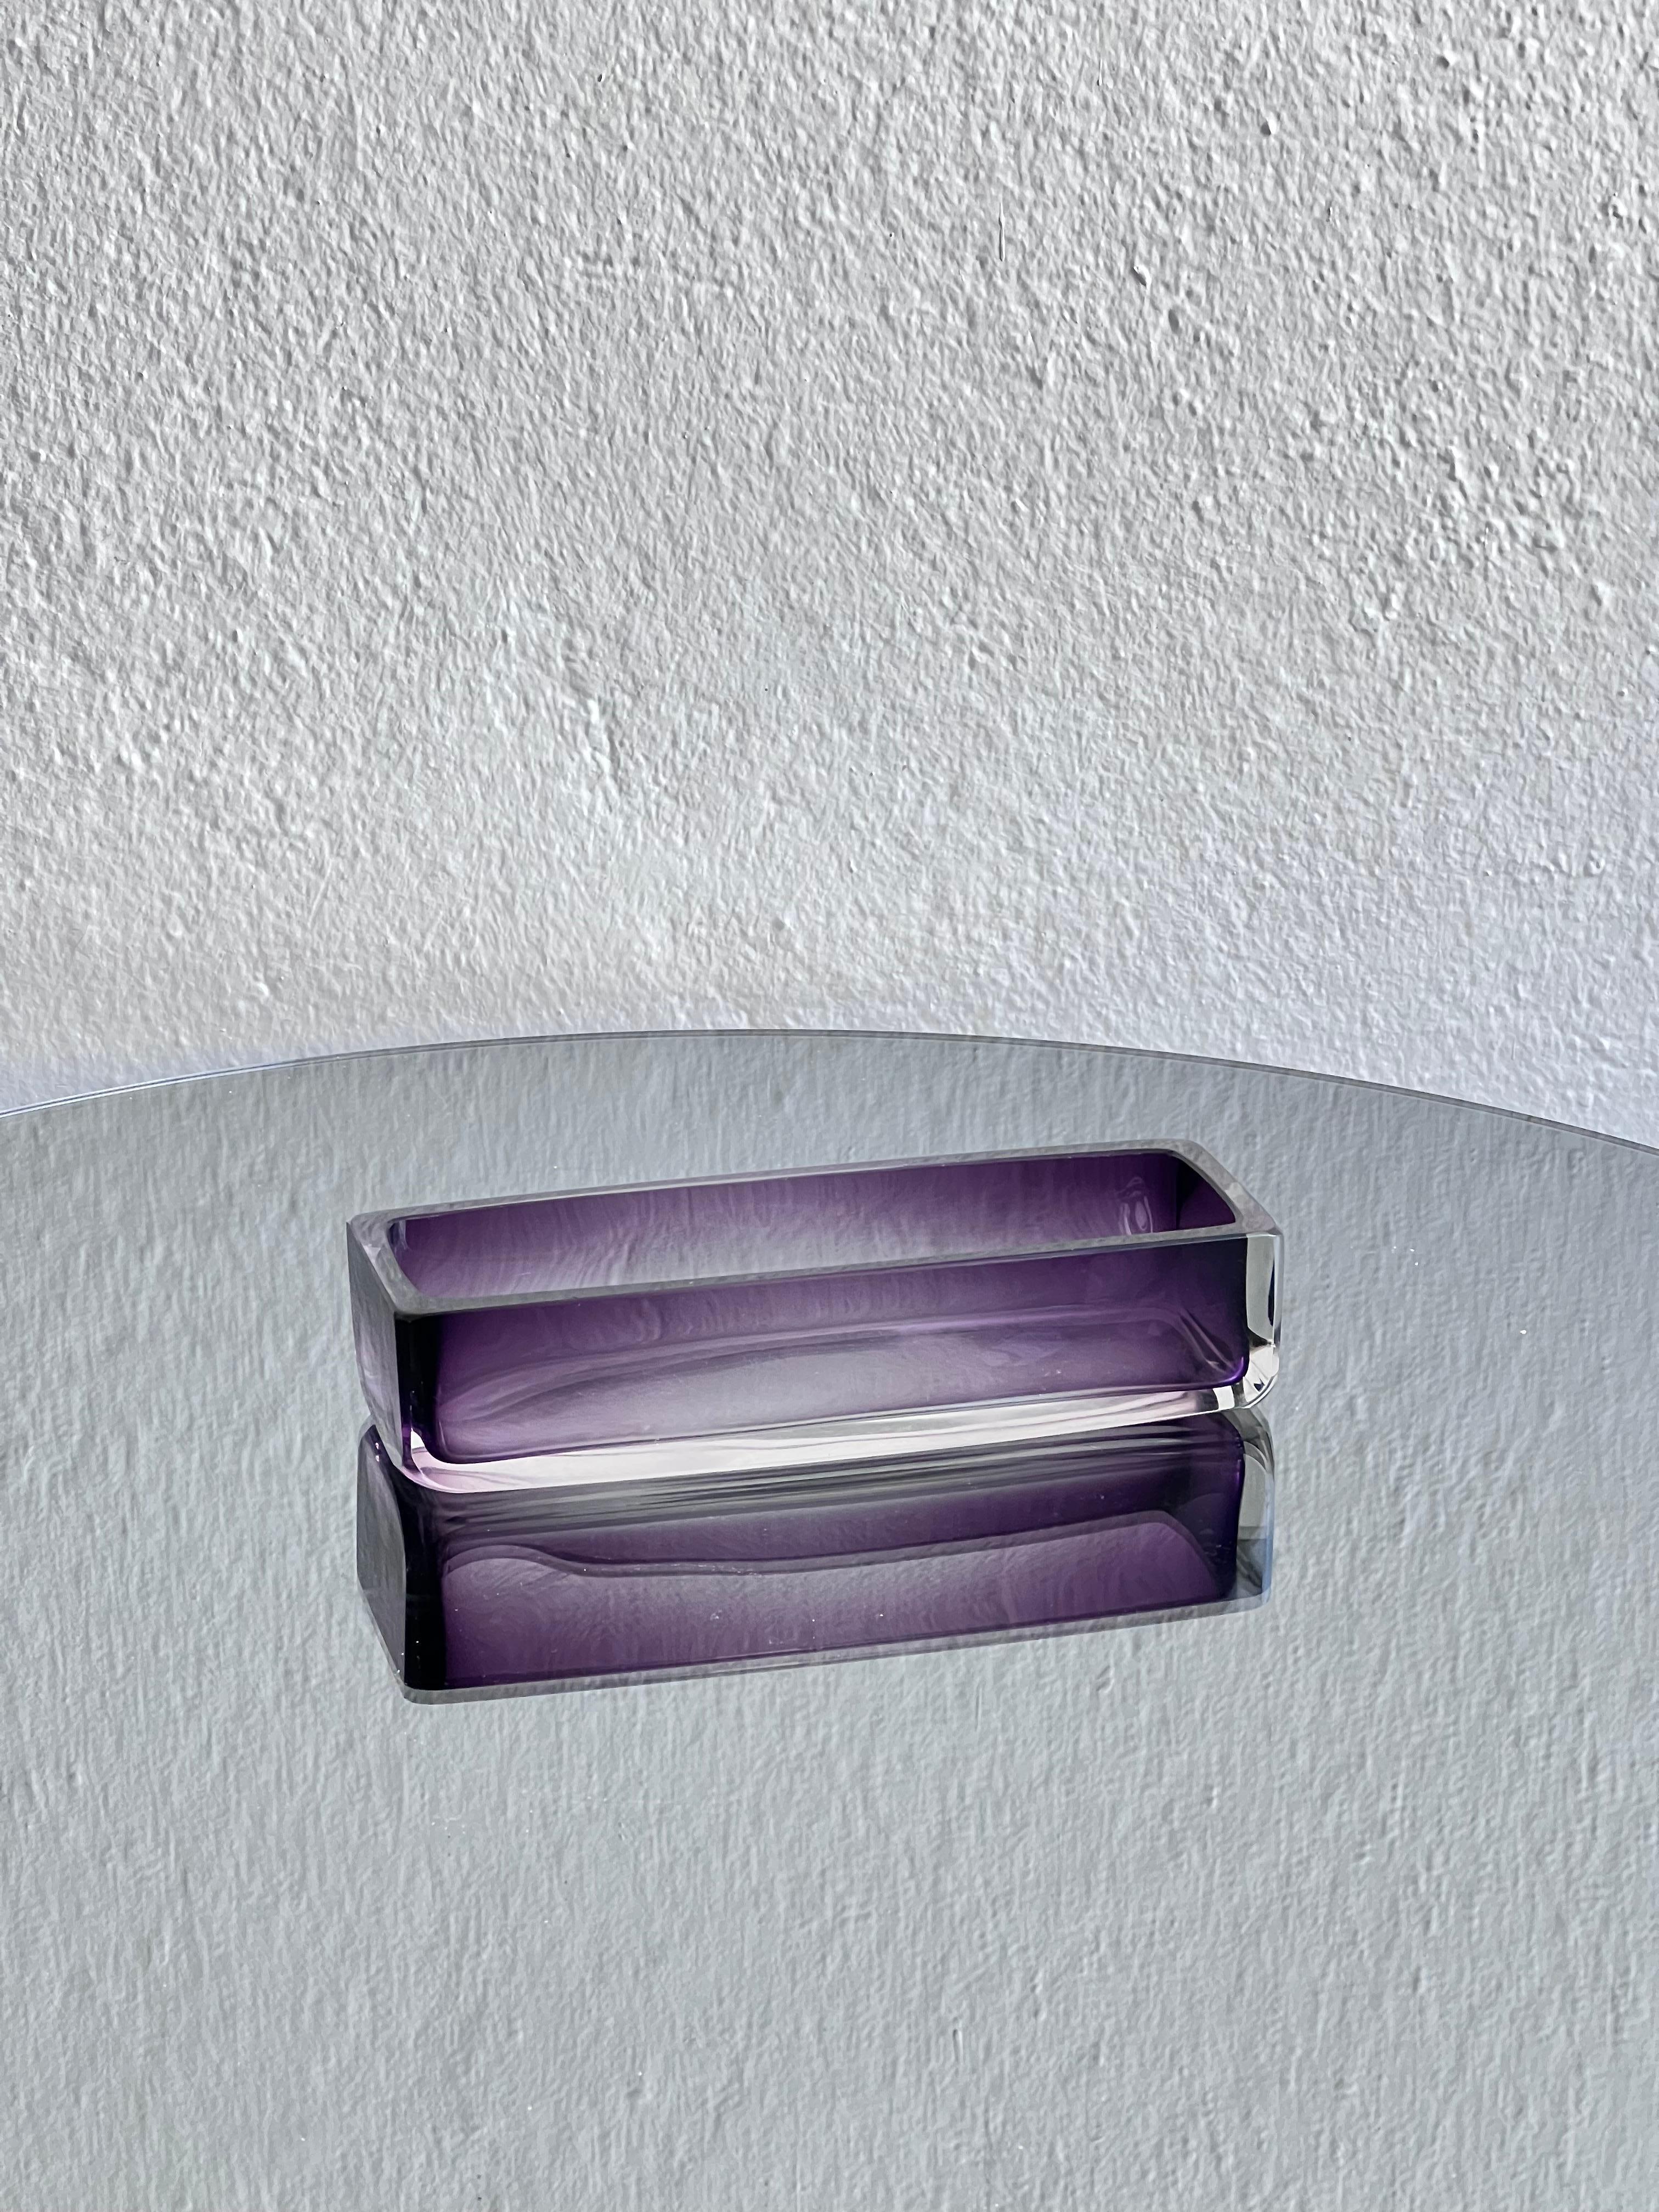 Verre de collection du milieu du siècle - plateau de valet de chambre en verre violet

Un plateau de valet de chambre / bol en verre, intemporel et attrayant. Nuance de violet allant vers le clair, ressemble à une pièce 